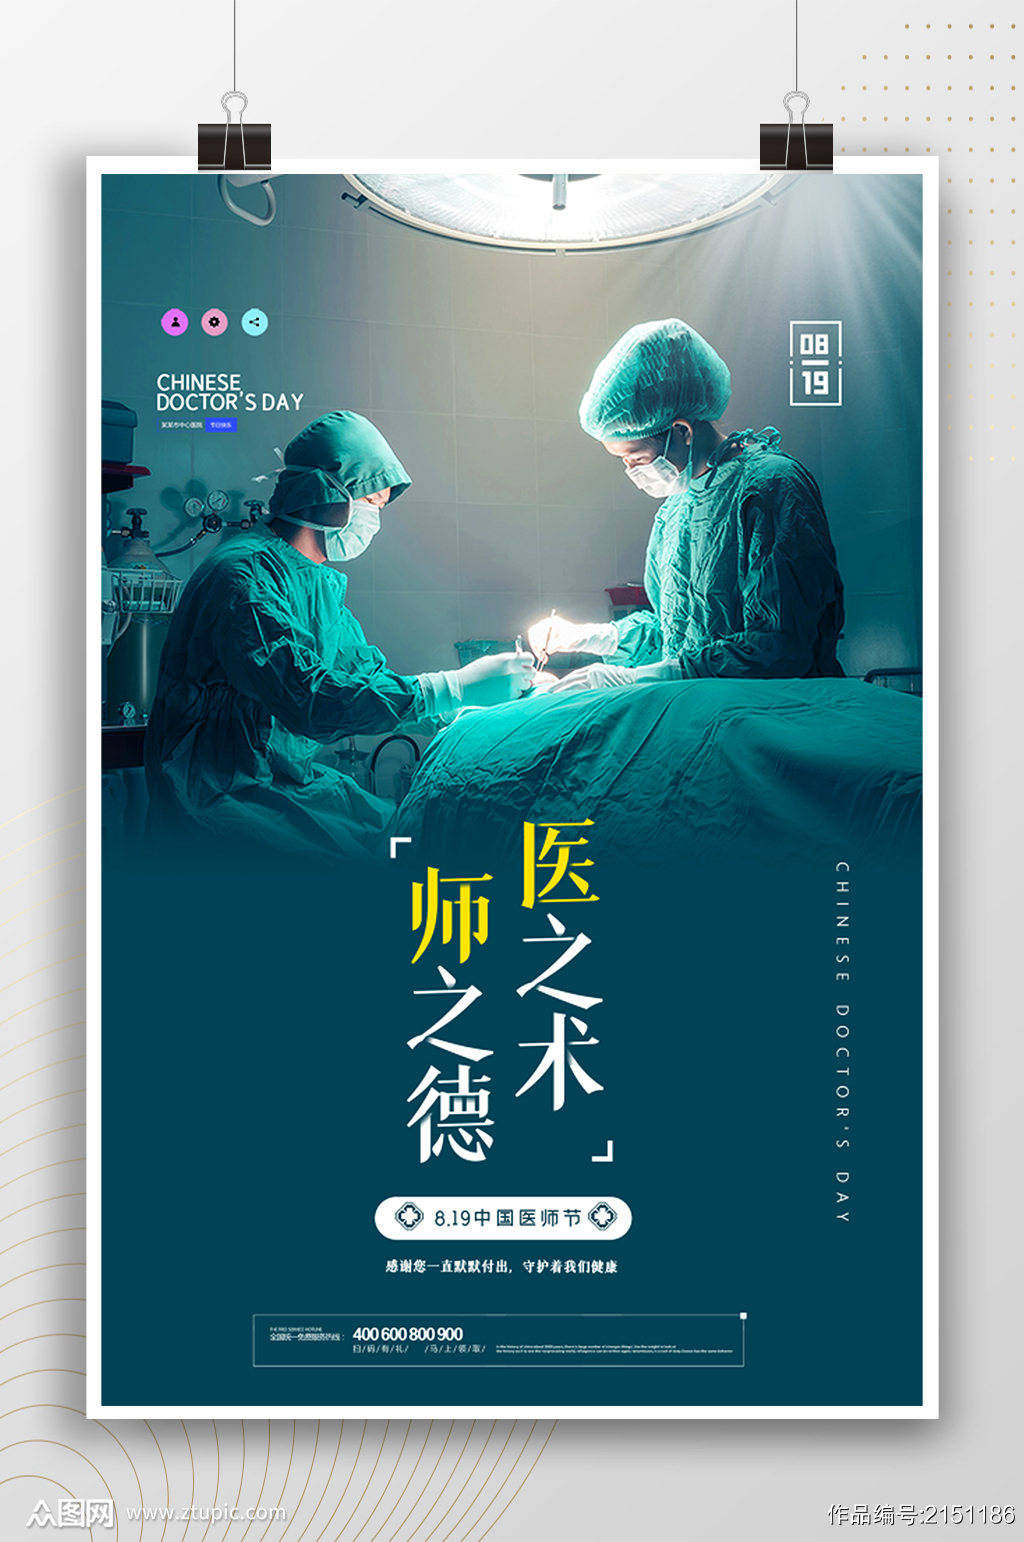 2021年最新中国医师节主题设计图片素材